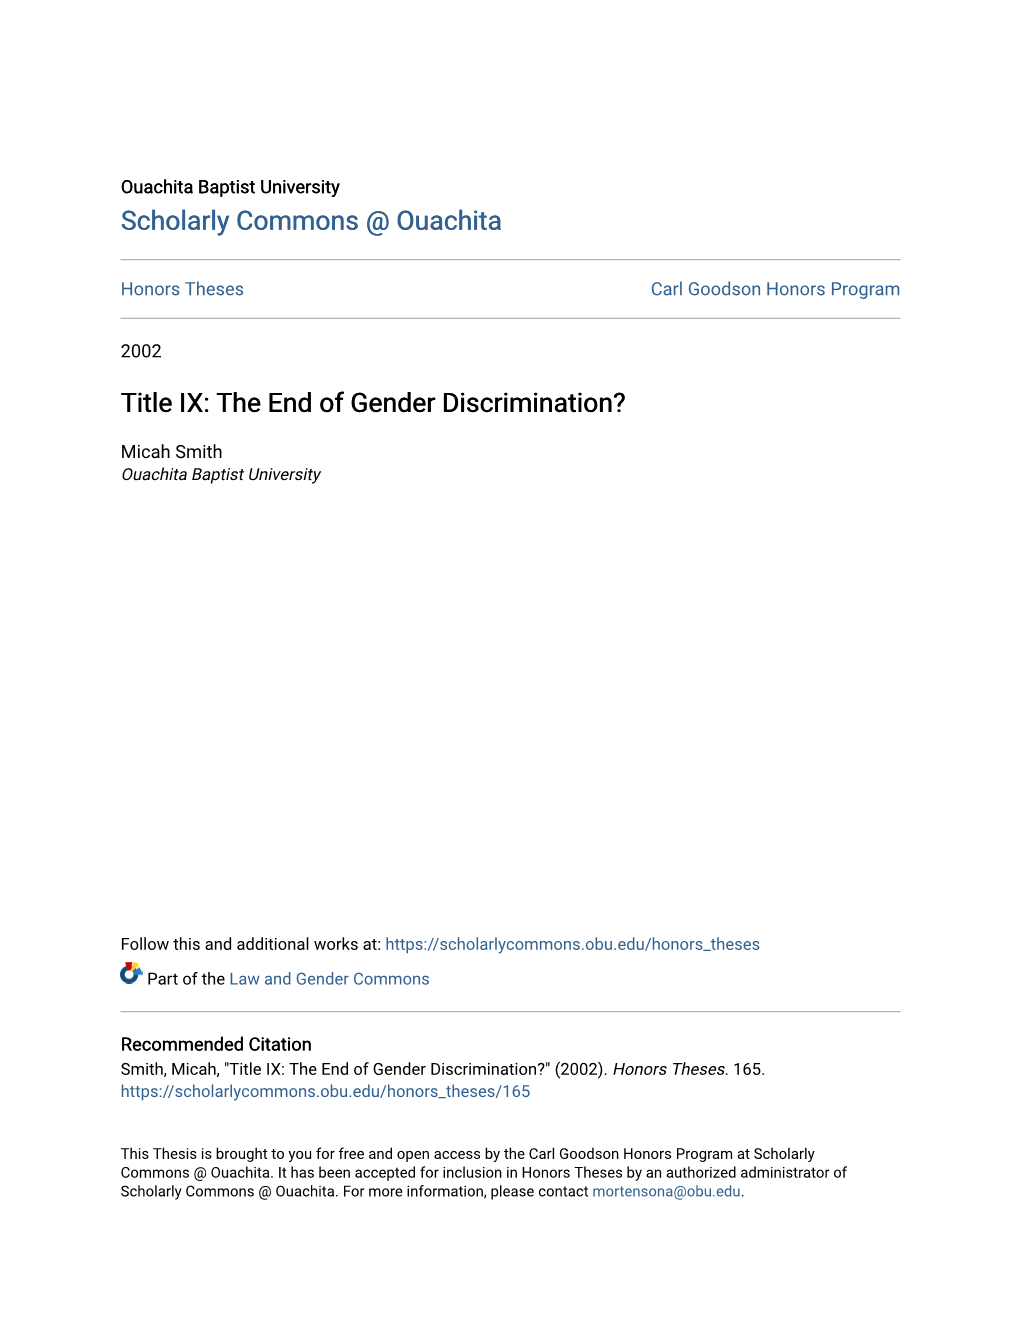 Title IX: the End of Gender Discrimination?